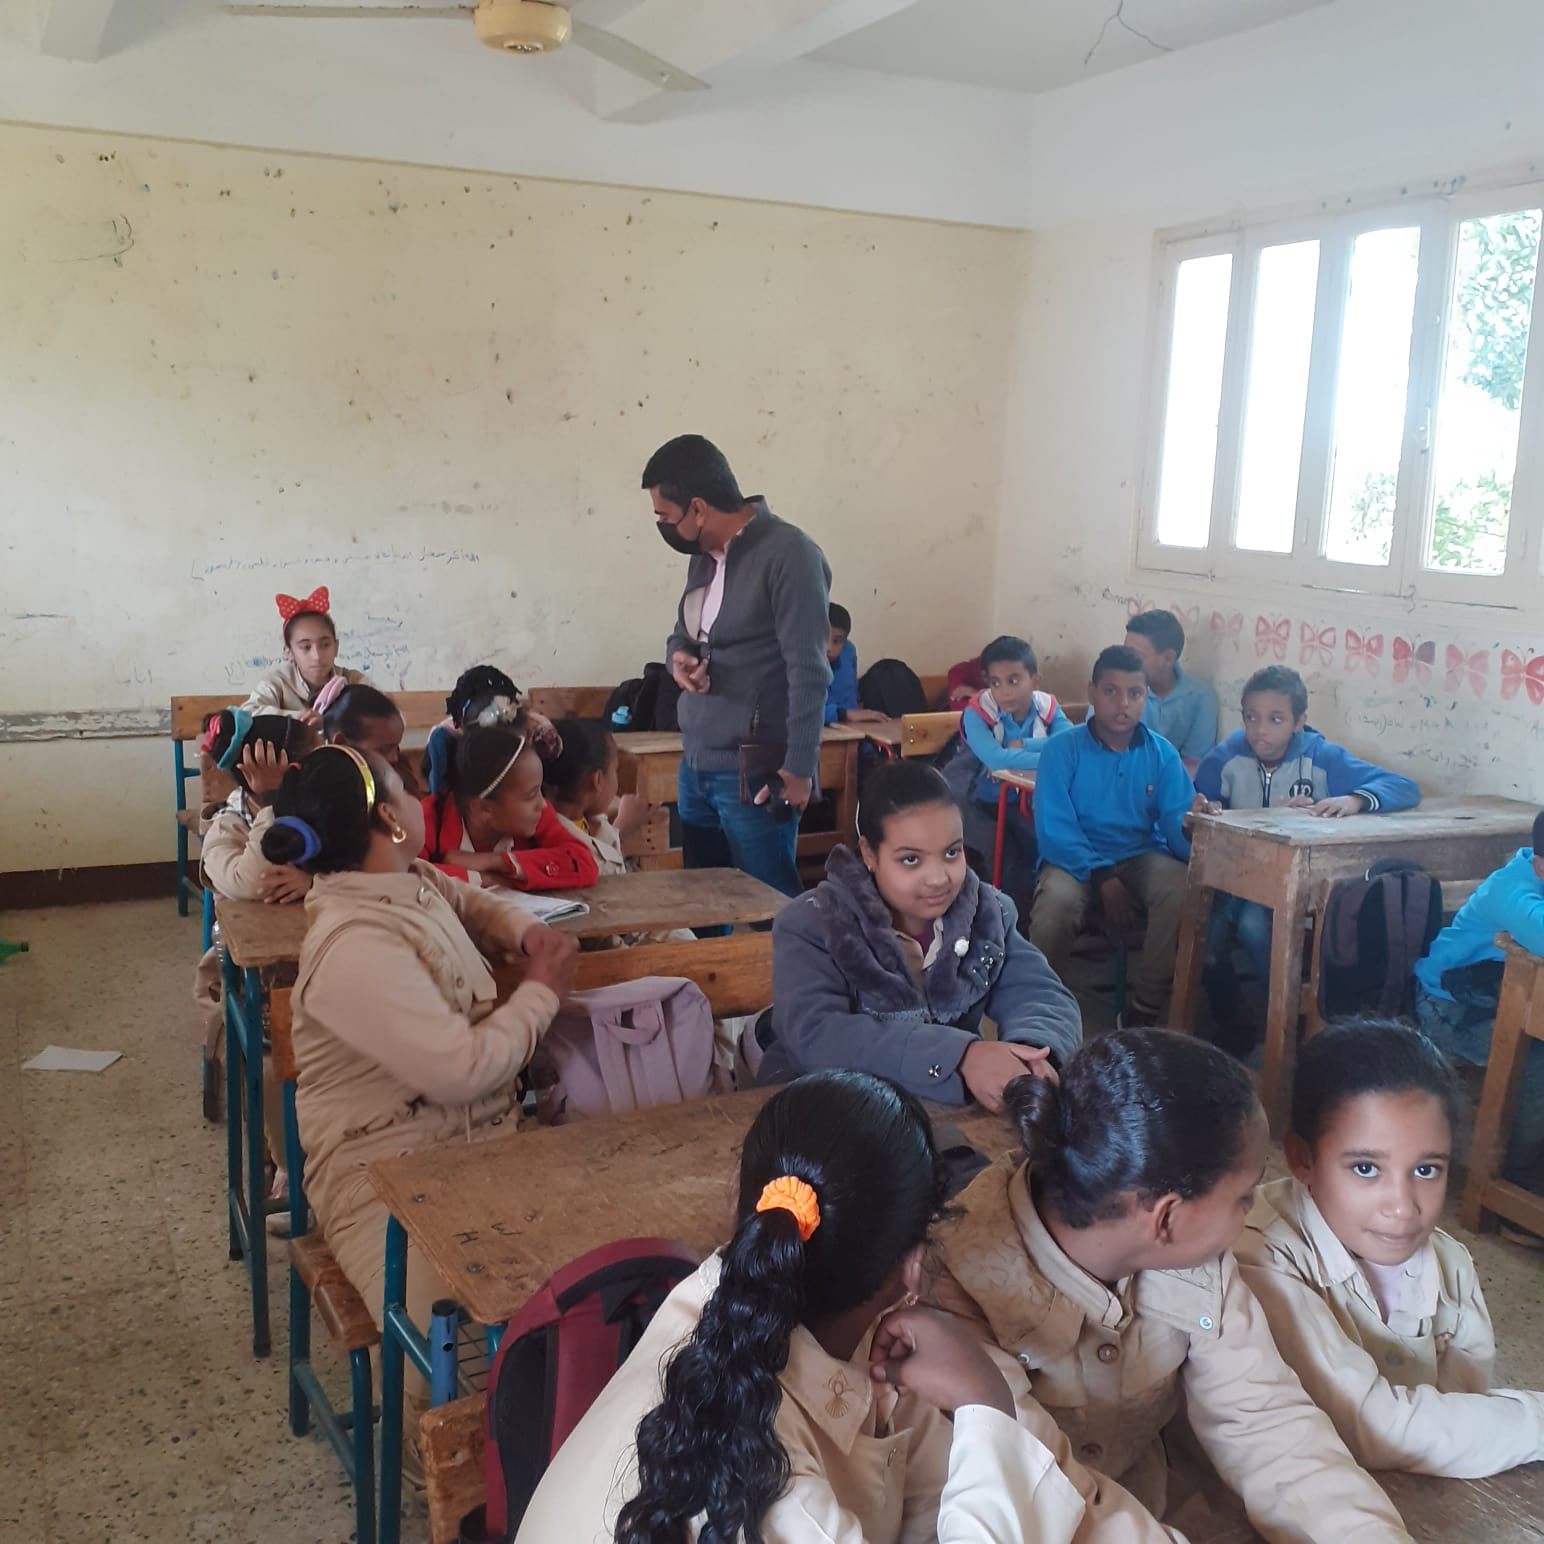 رئيس مدينة البياضية بمحافظة الأقصر يفحص شكوى طلبة مدرسة نجع الشيخ  (3)